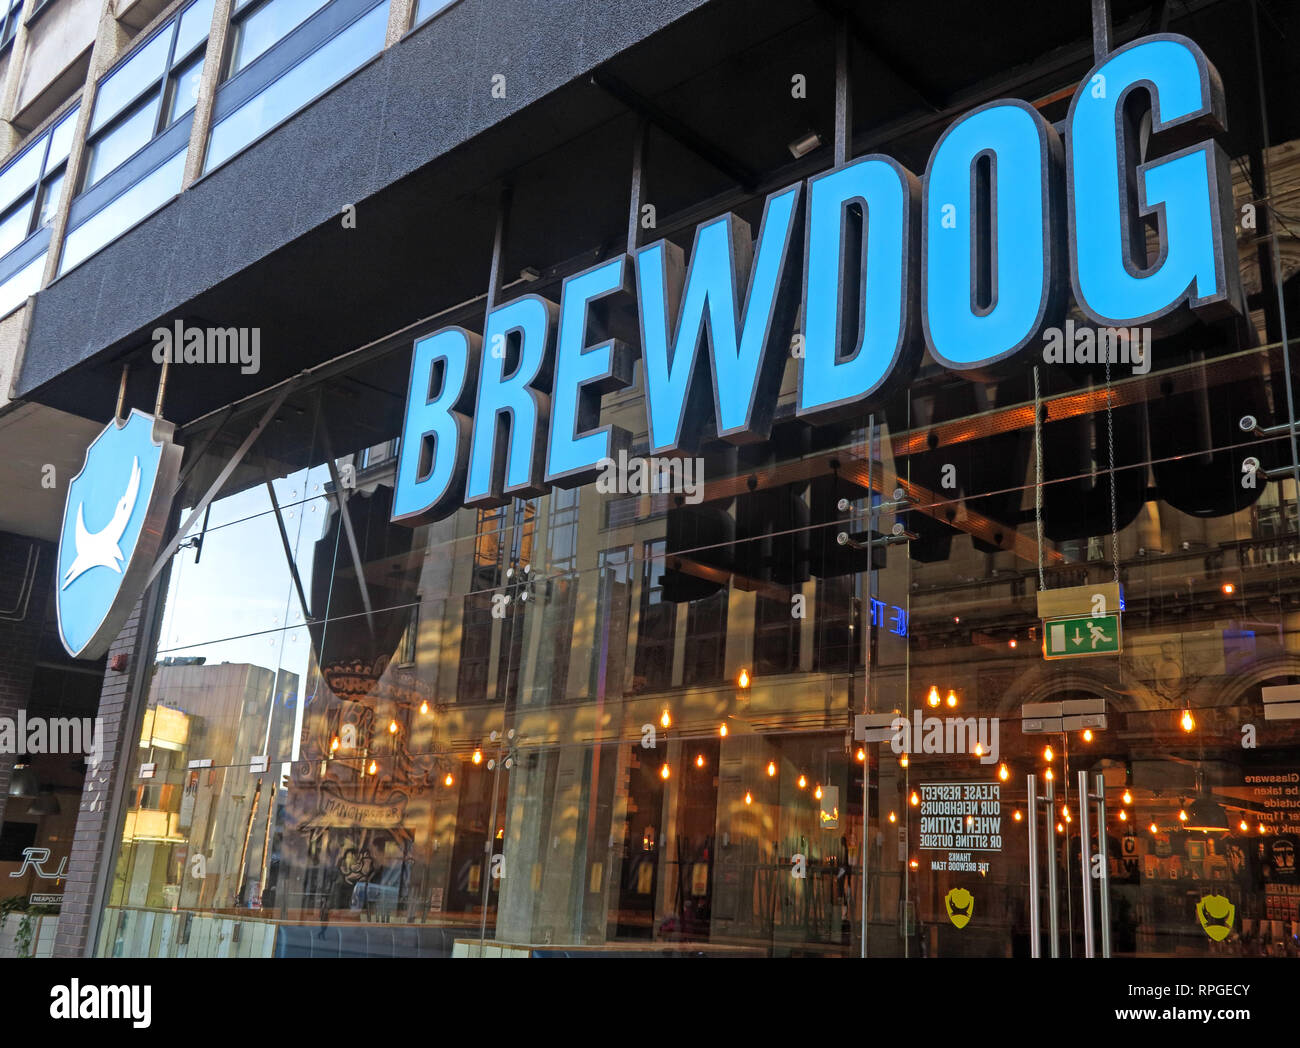 Chaîne de pub Brewdog basée à Ellon, Écosse, leur bar Manchester, Scottish Mutual House, 35 Peter St, Manchester, Angleterre, Royaume-Uni, M2 5BG Banque D'Images